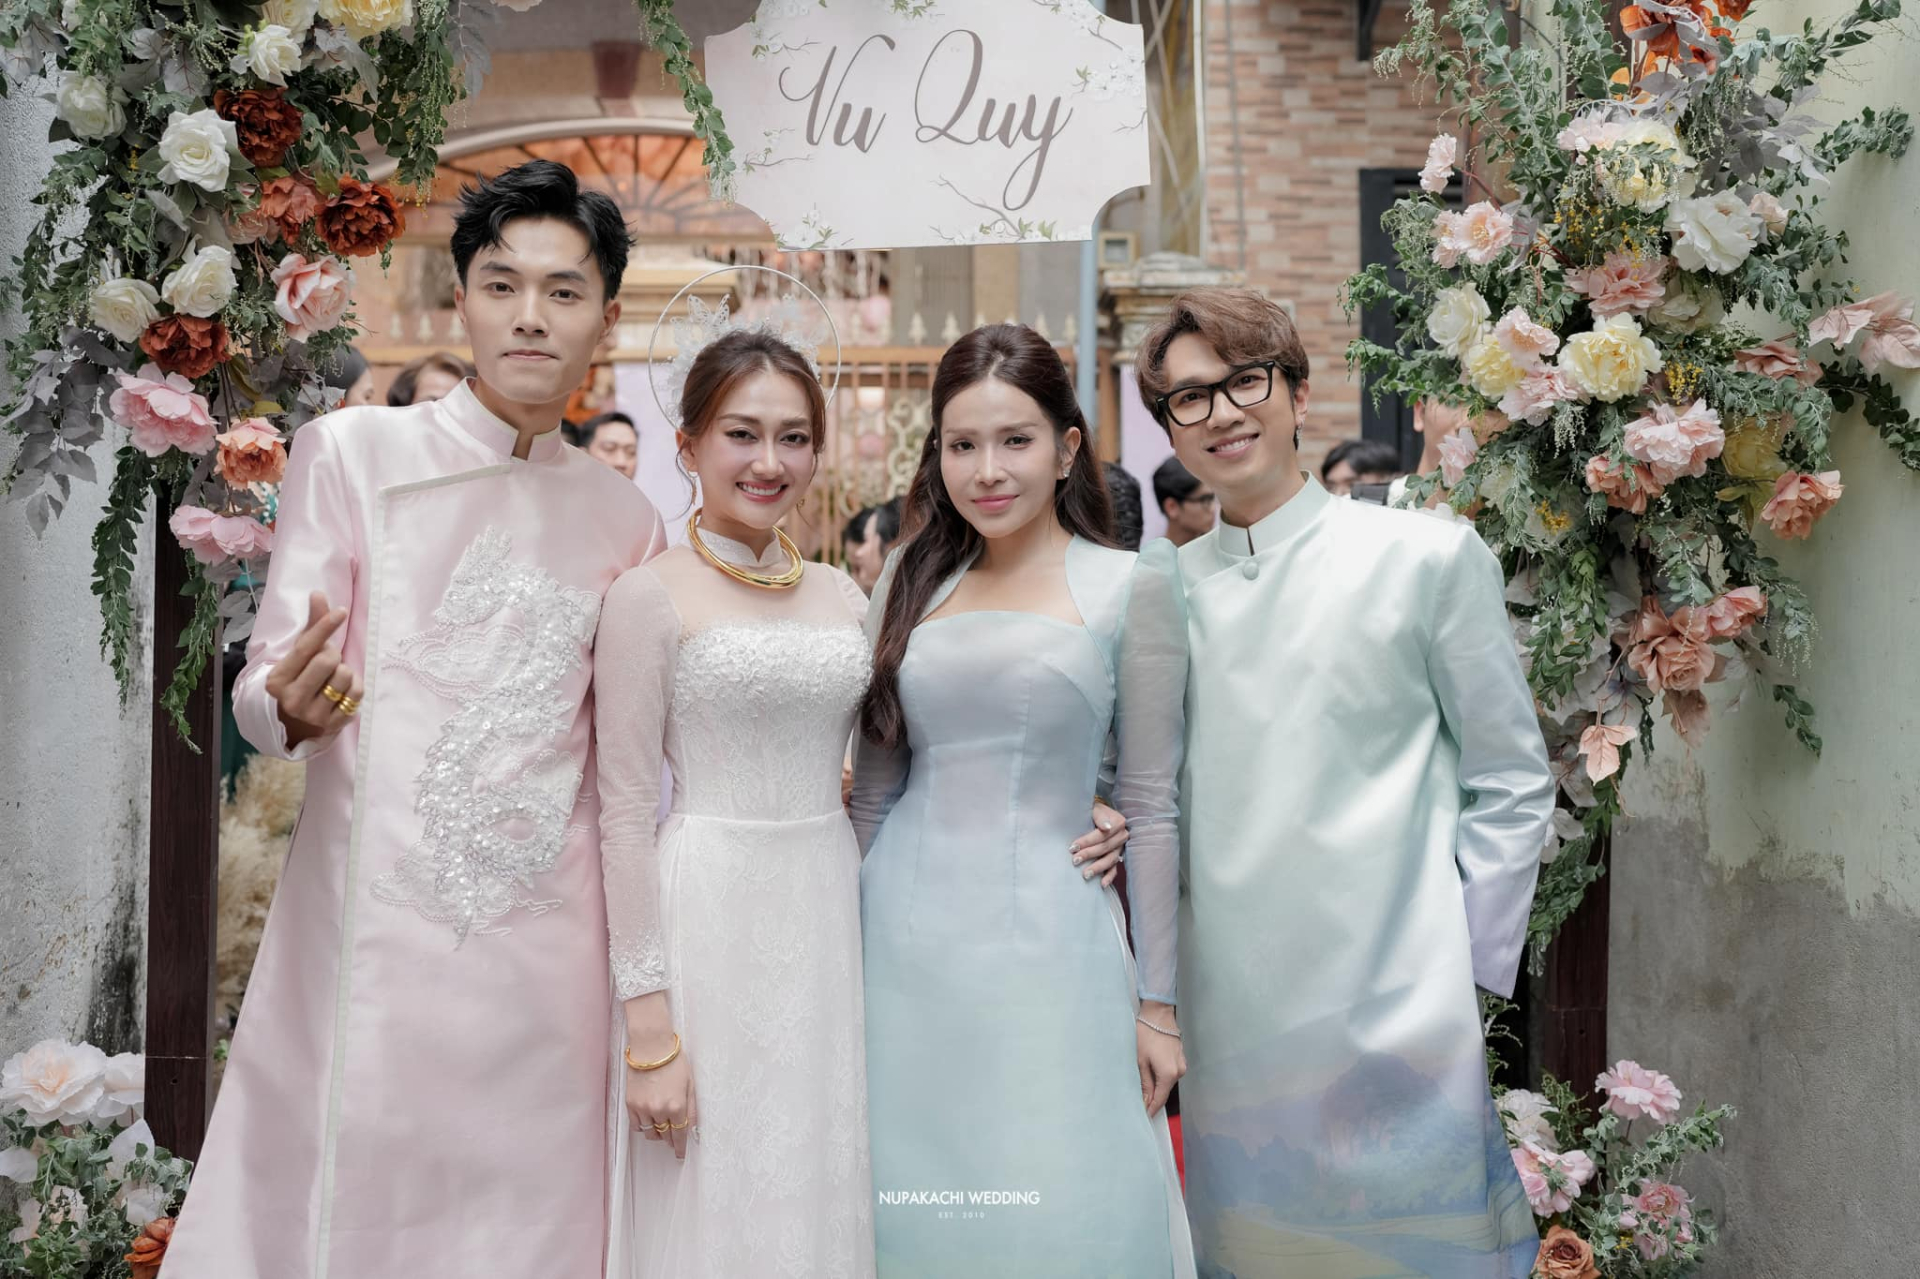 Khả Như và Huỳnh Phương 'né' nhau tuyệt đối tại đám cưới Phương Lan, nhưng một chi tiết để lộ chuyện tình cảm? - ảnh 1